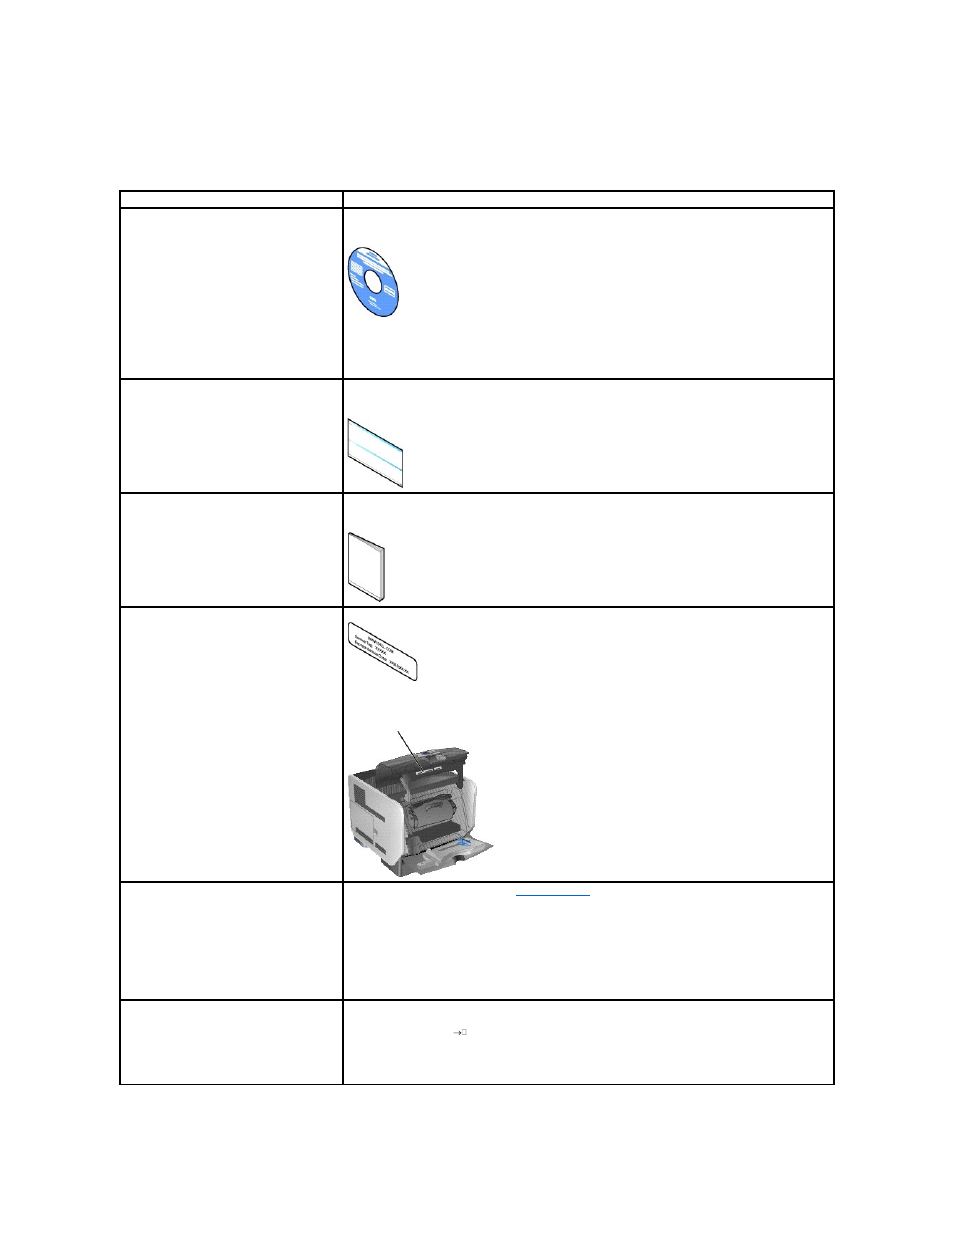 Individuazione delle informazioni | Dell 5310n Mono Laser Printer Manuale d'uso | Pagina 6 / 150